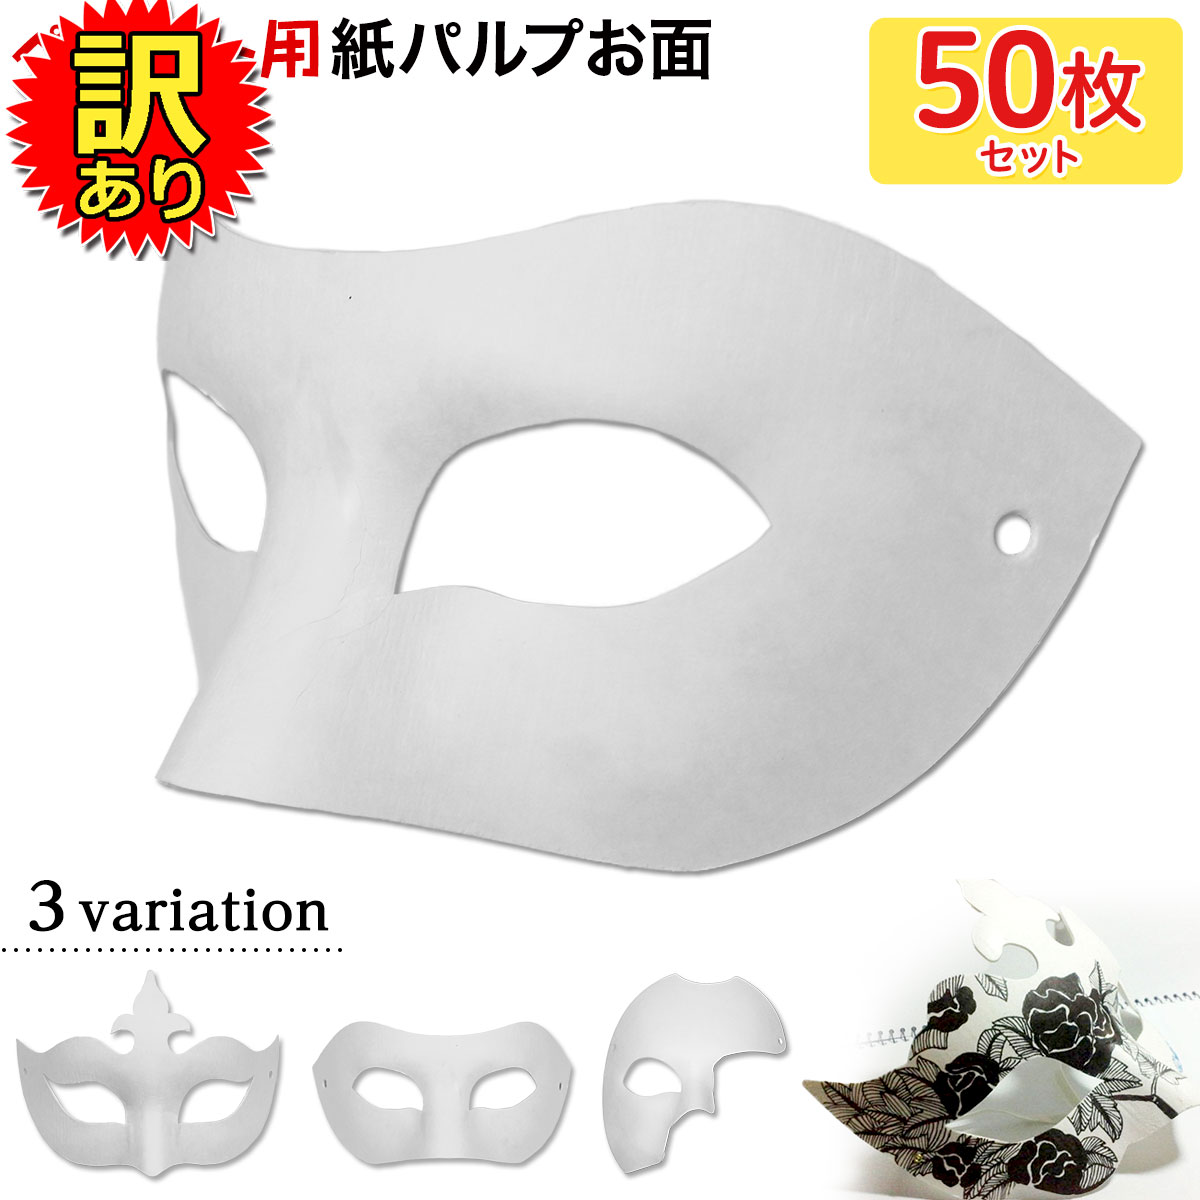 【エントリーでP10倍】 【訳あり】 お面 ホワイトマスク アイマスク 仮面 無地 ペイント 紙パルプ製 50枚セット